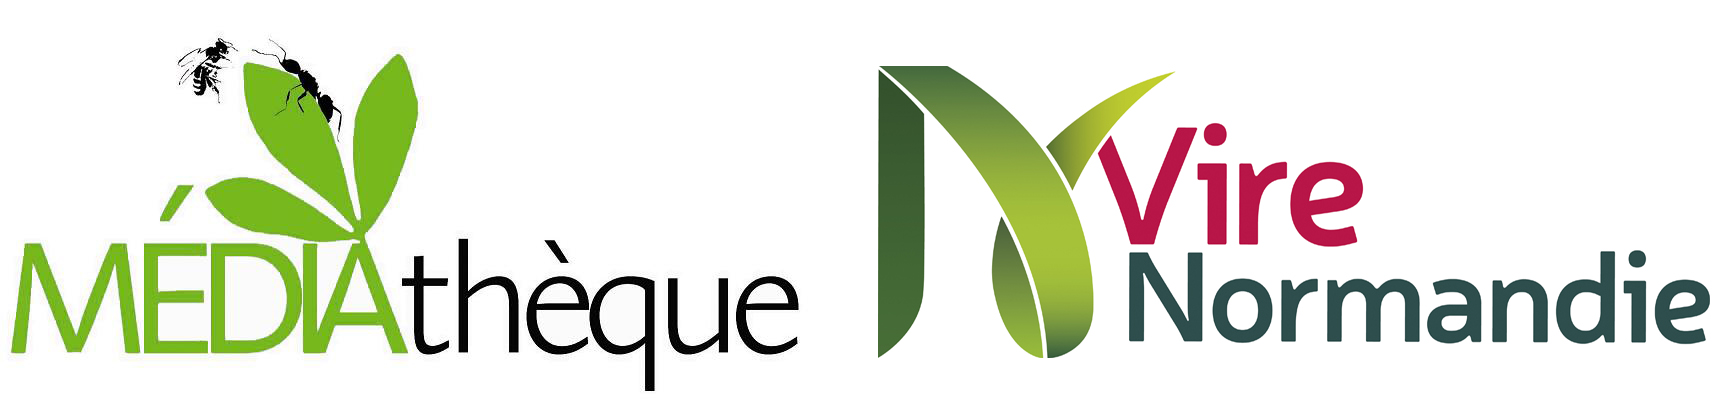 logo mediatheque VN